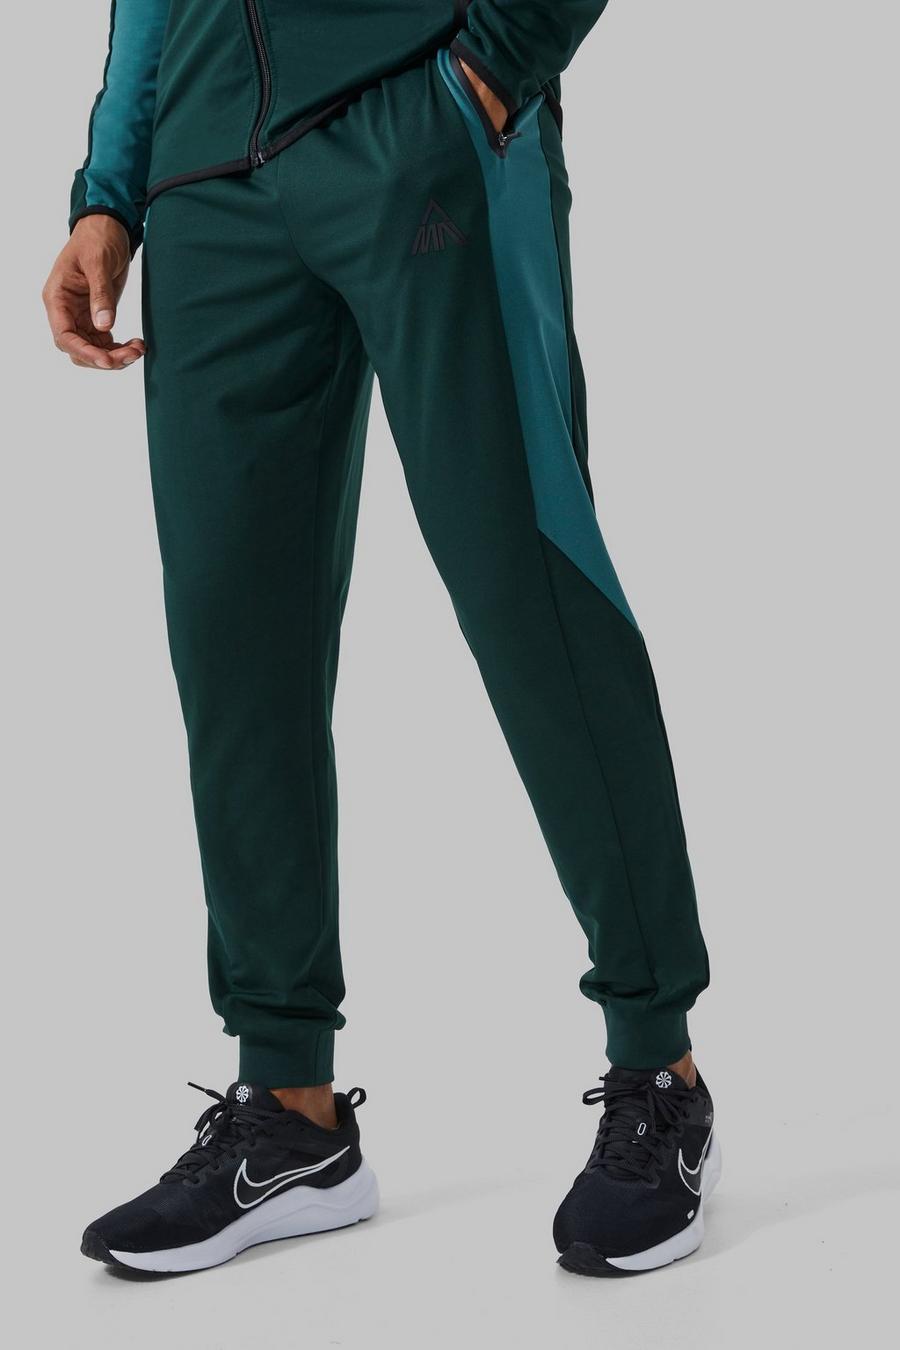 Pantaloni tuta Man Active a blocchi di colore con pannelli, Forest